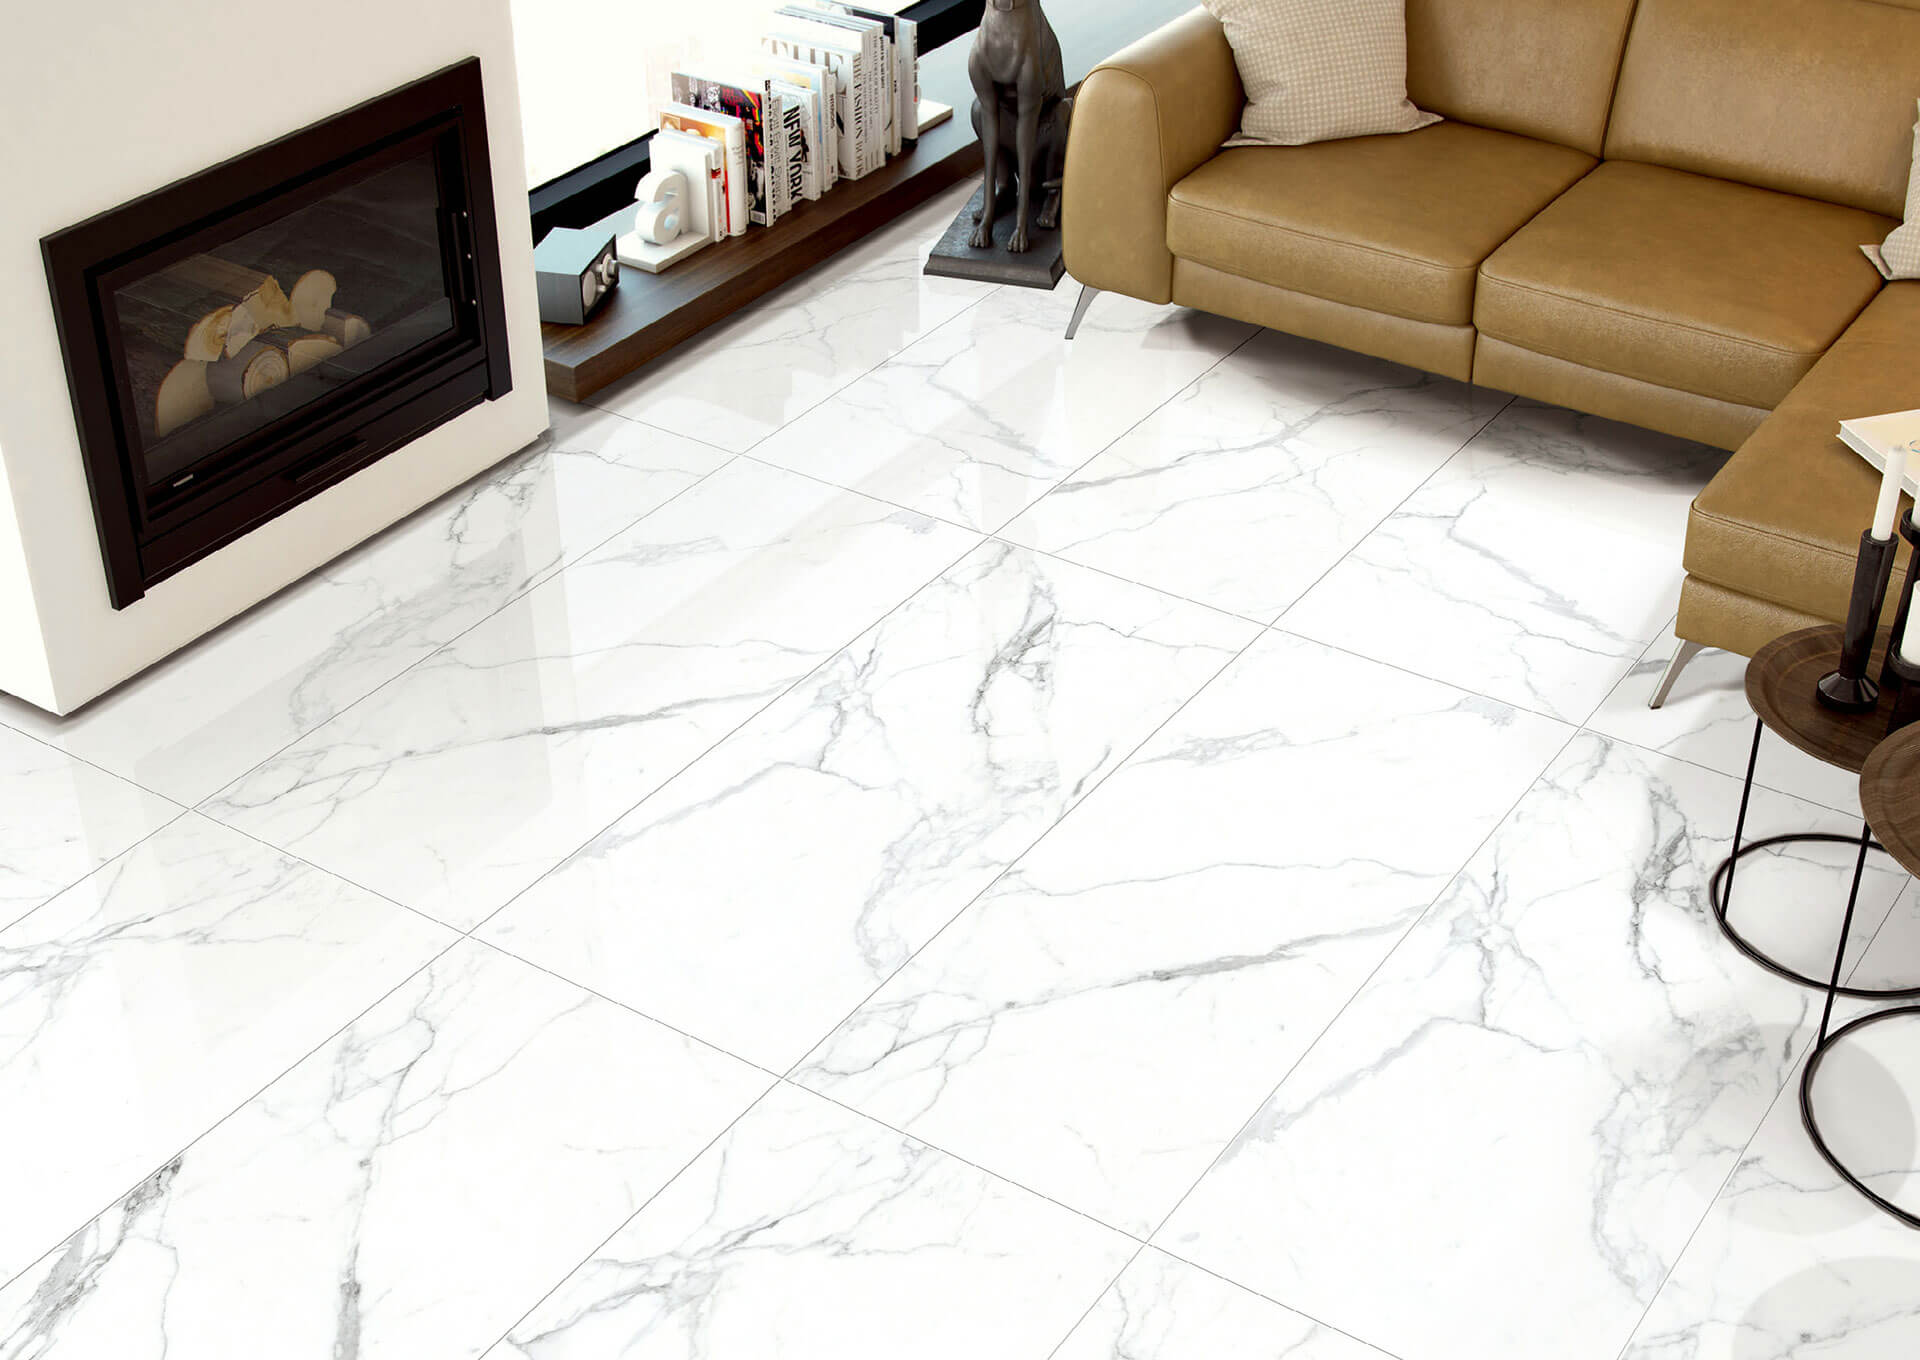 tile pattern - marble look